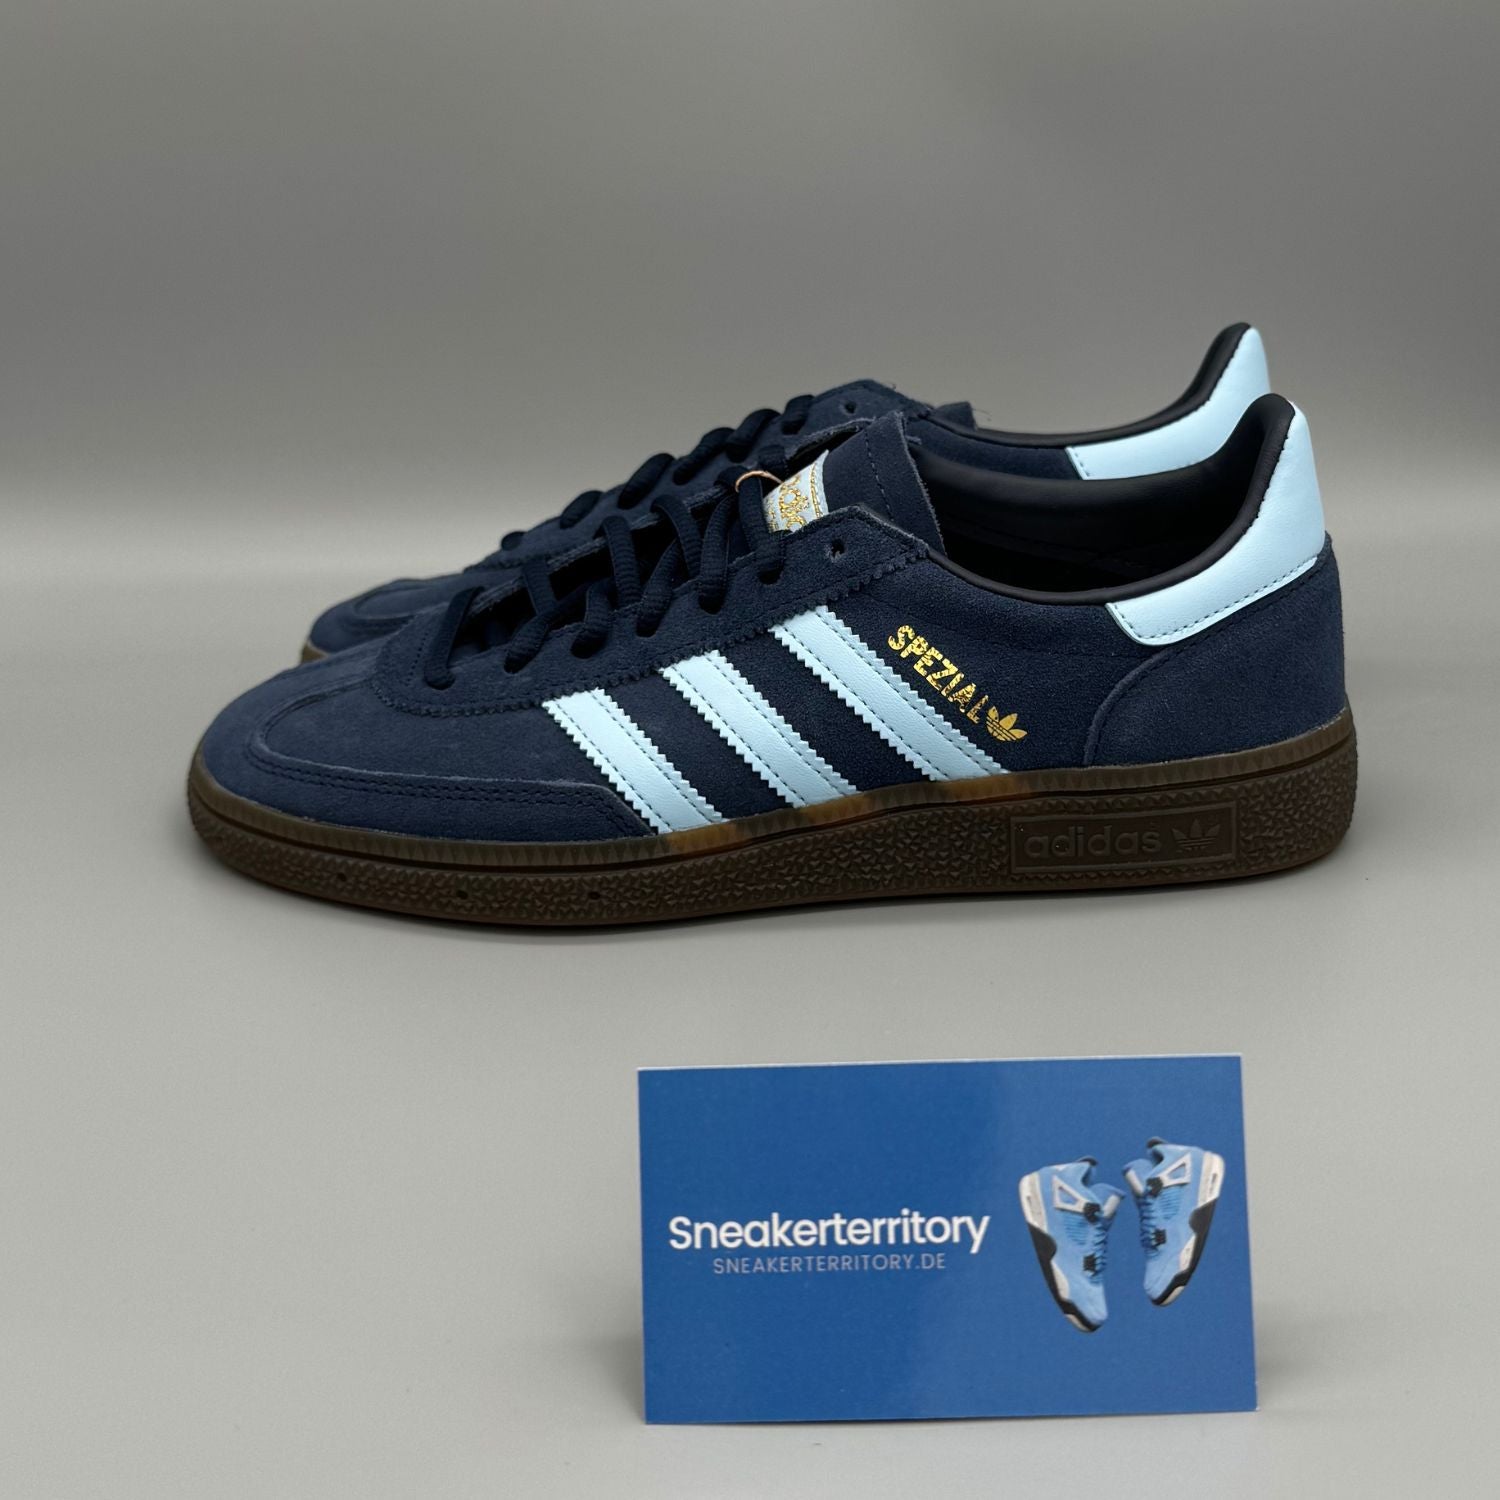 Adidas Handball Spezial Navy Gum - Sneakerterritory; Sneaker Territory; Handball Spezial blau; Handball Spezial blue